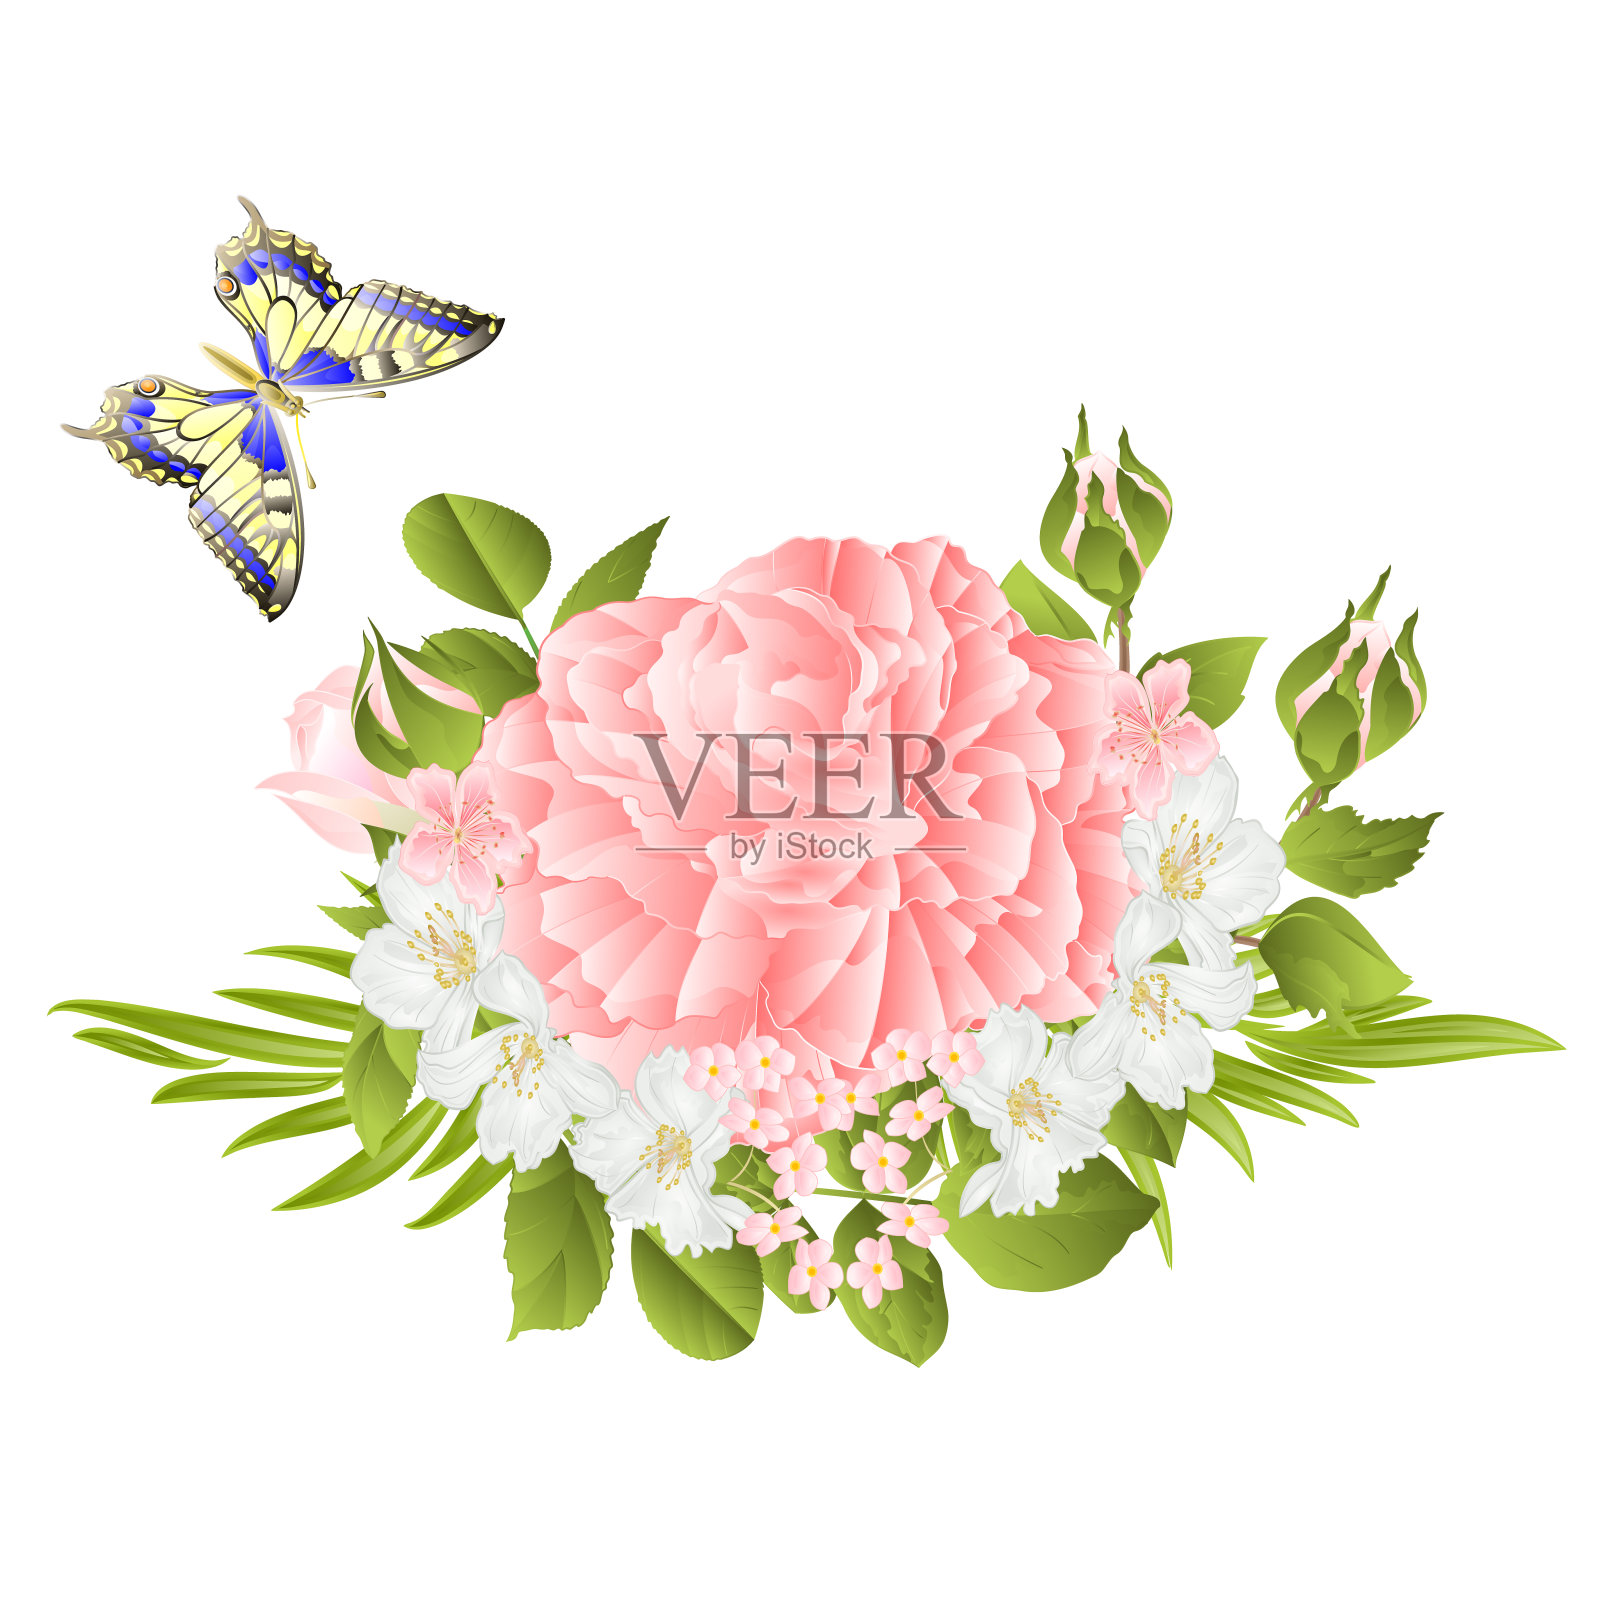 花粉红玫瑰和花蕾茉莉和蝴蝶复古节日背景水彩矢量插图编辑插画图片素材